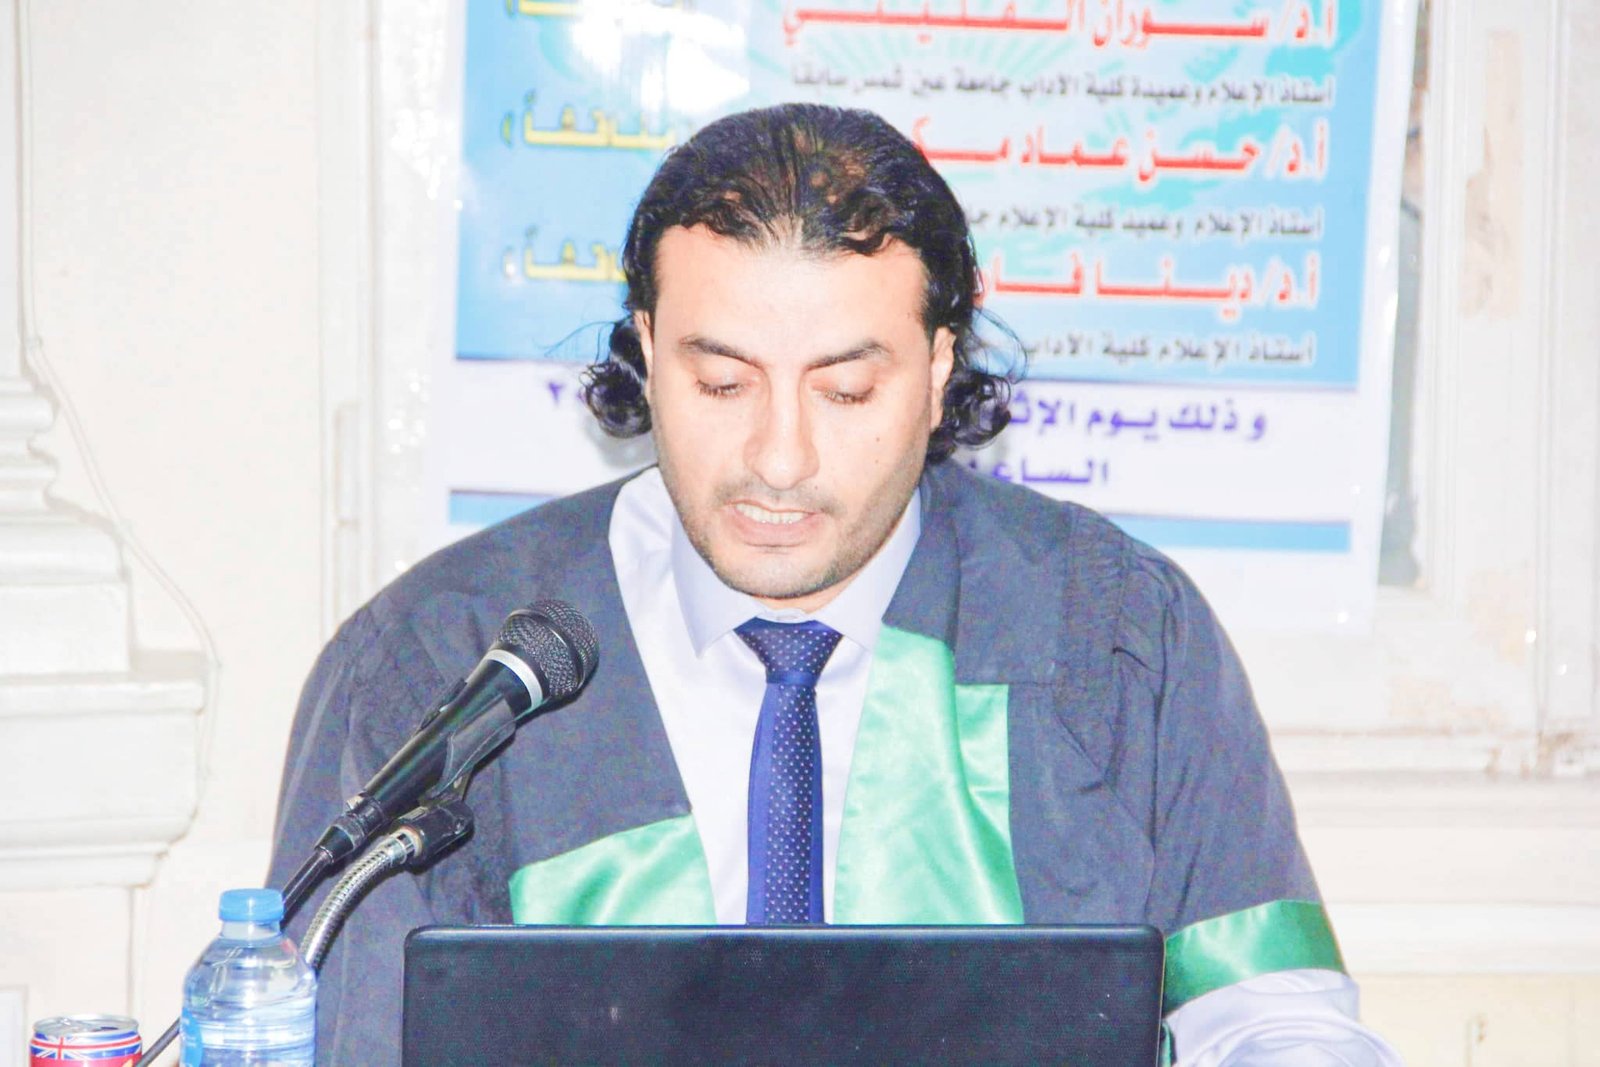 عماد عنان - مدير مركز الشرق الأدنى للدراسات الاستراتيجية